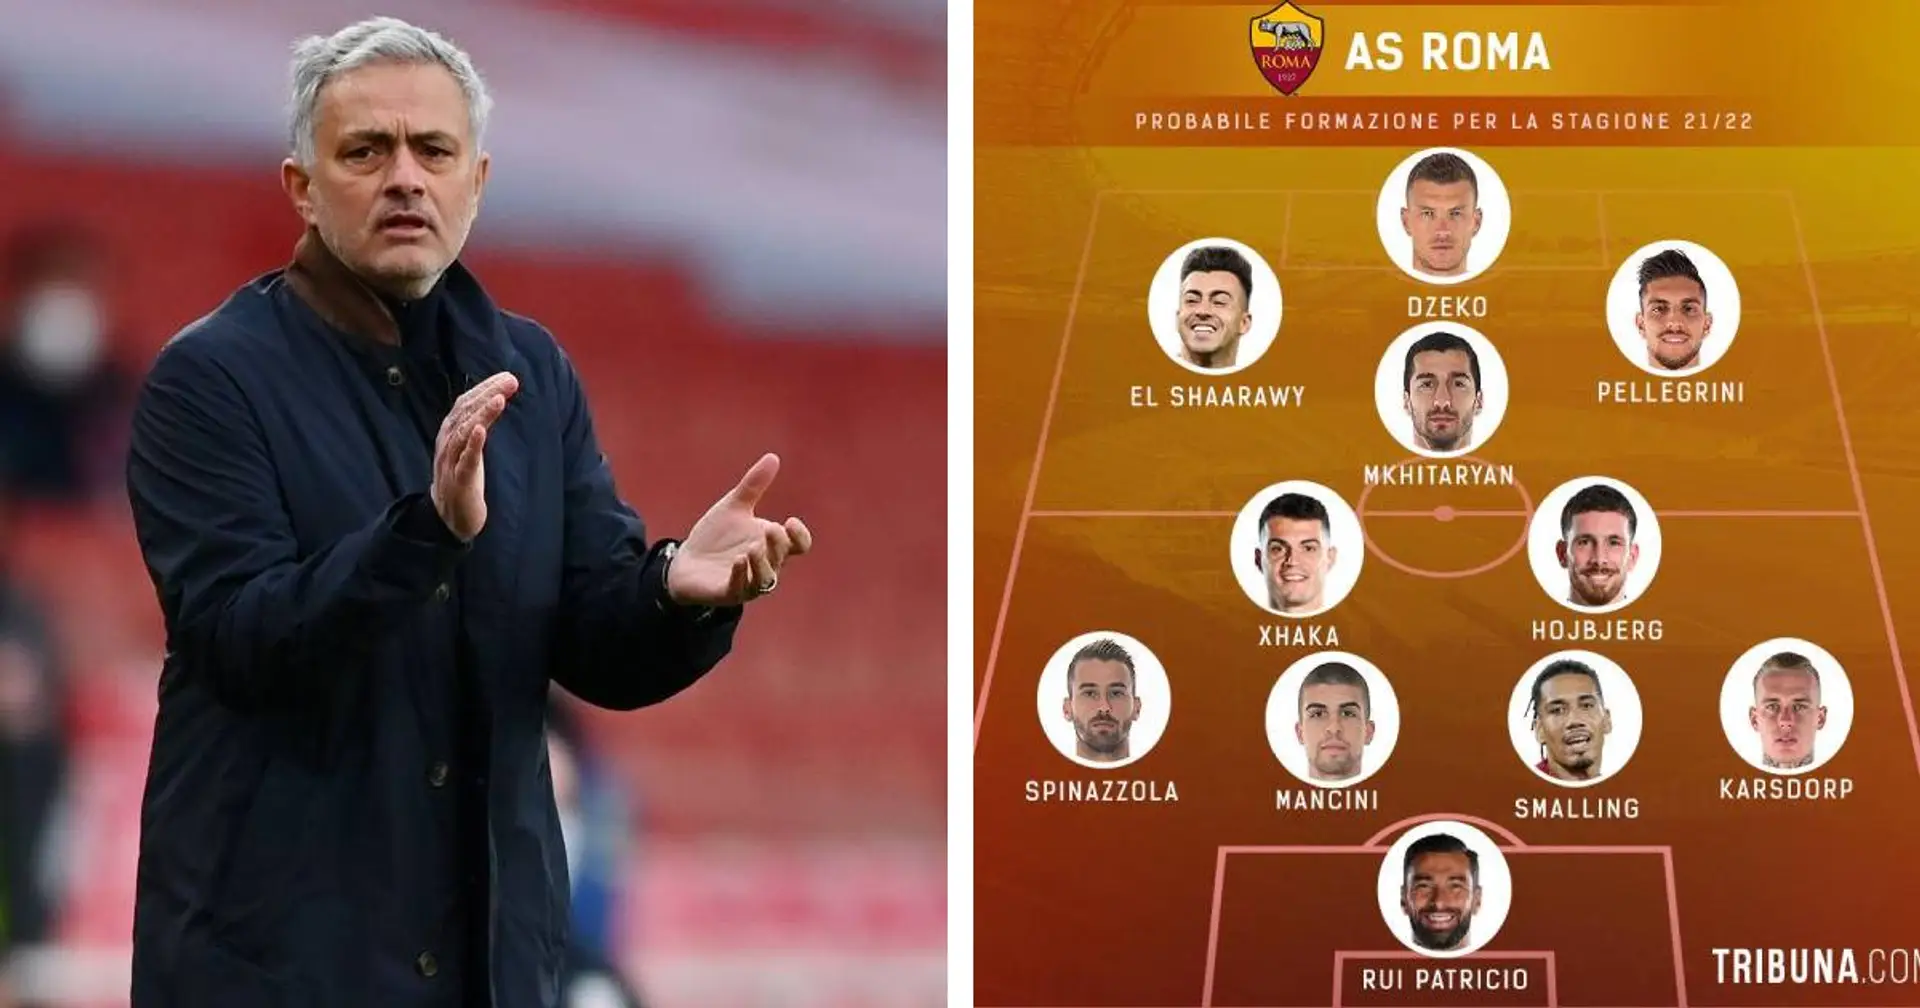 La squadra da sogno che la Roma potrebbe schierare nella stagione 21/22 con i giocatori voluti da Mourinho